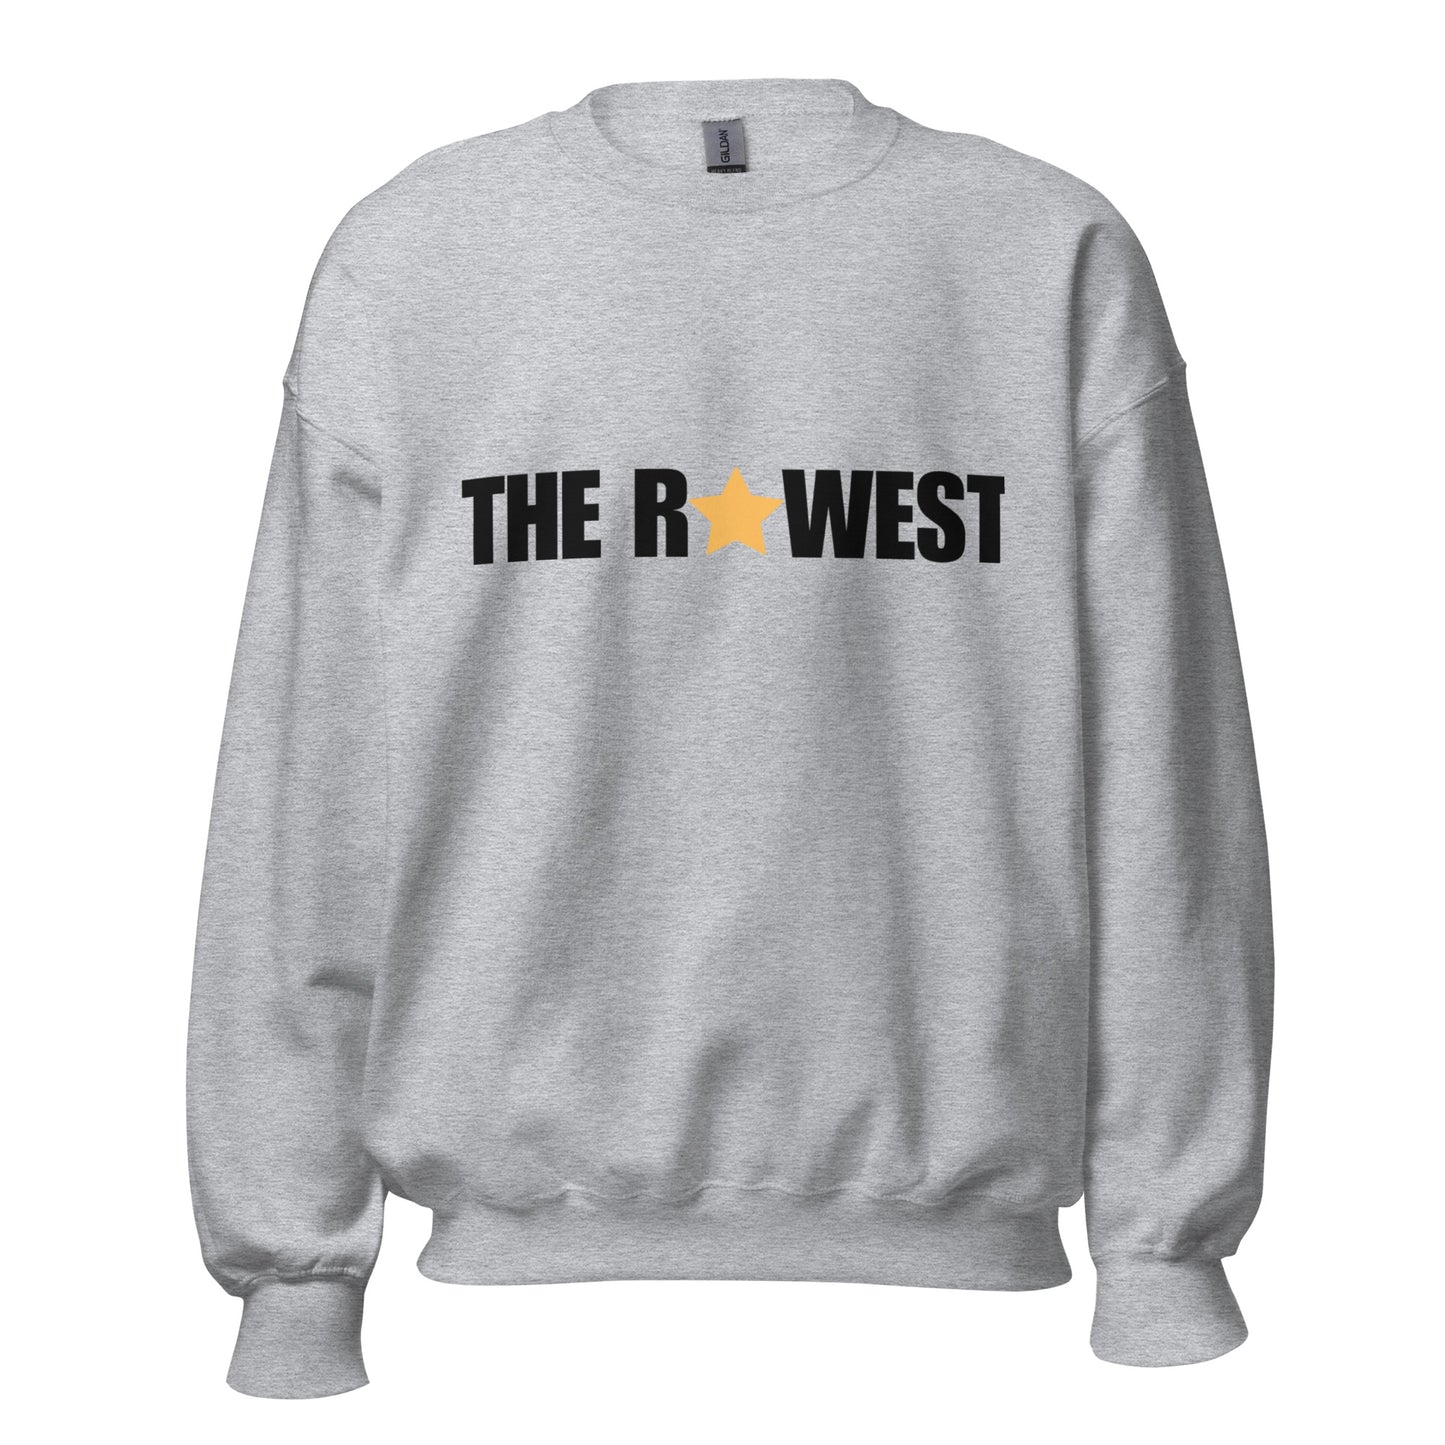 The Rawest Unisex Sweatshirt